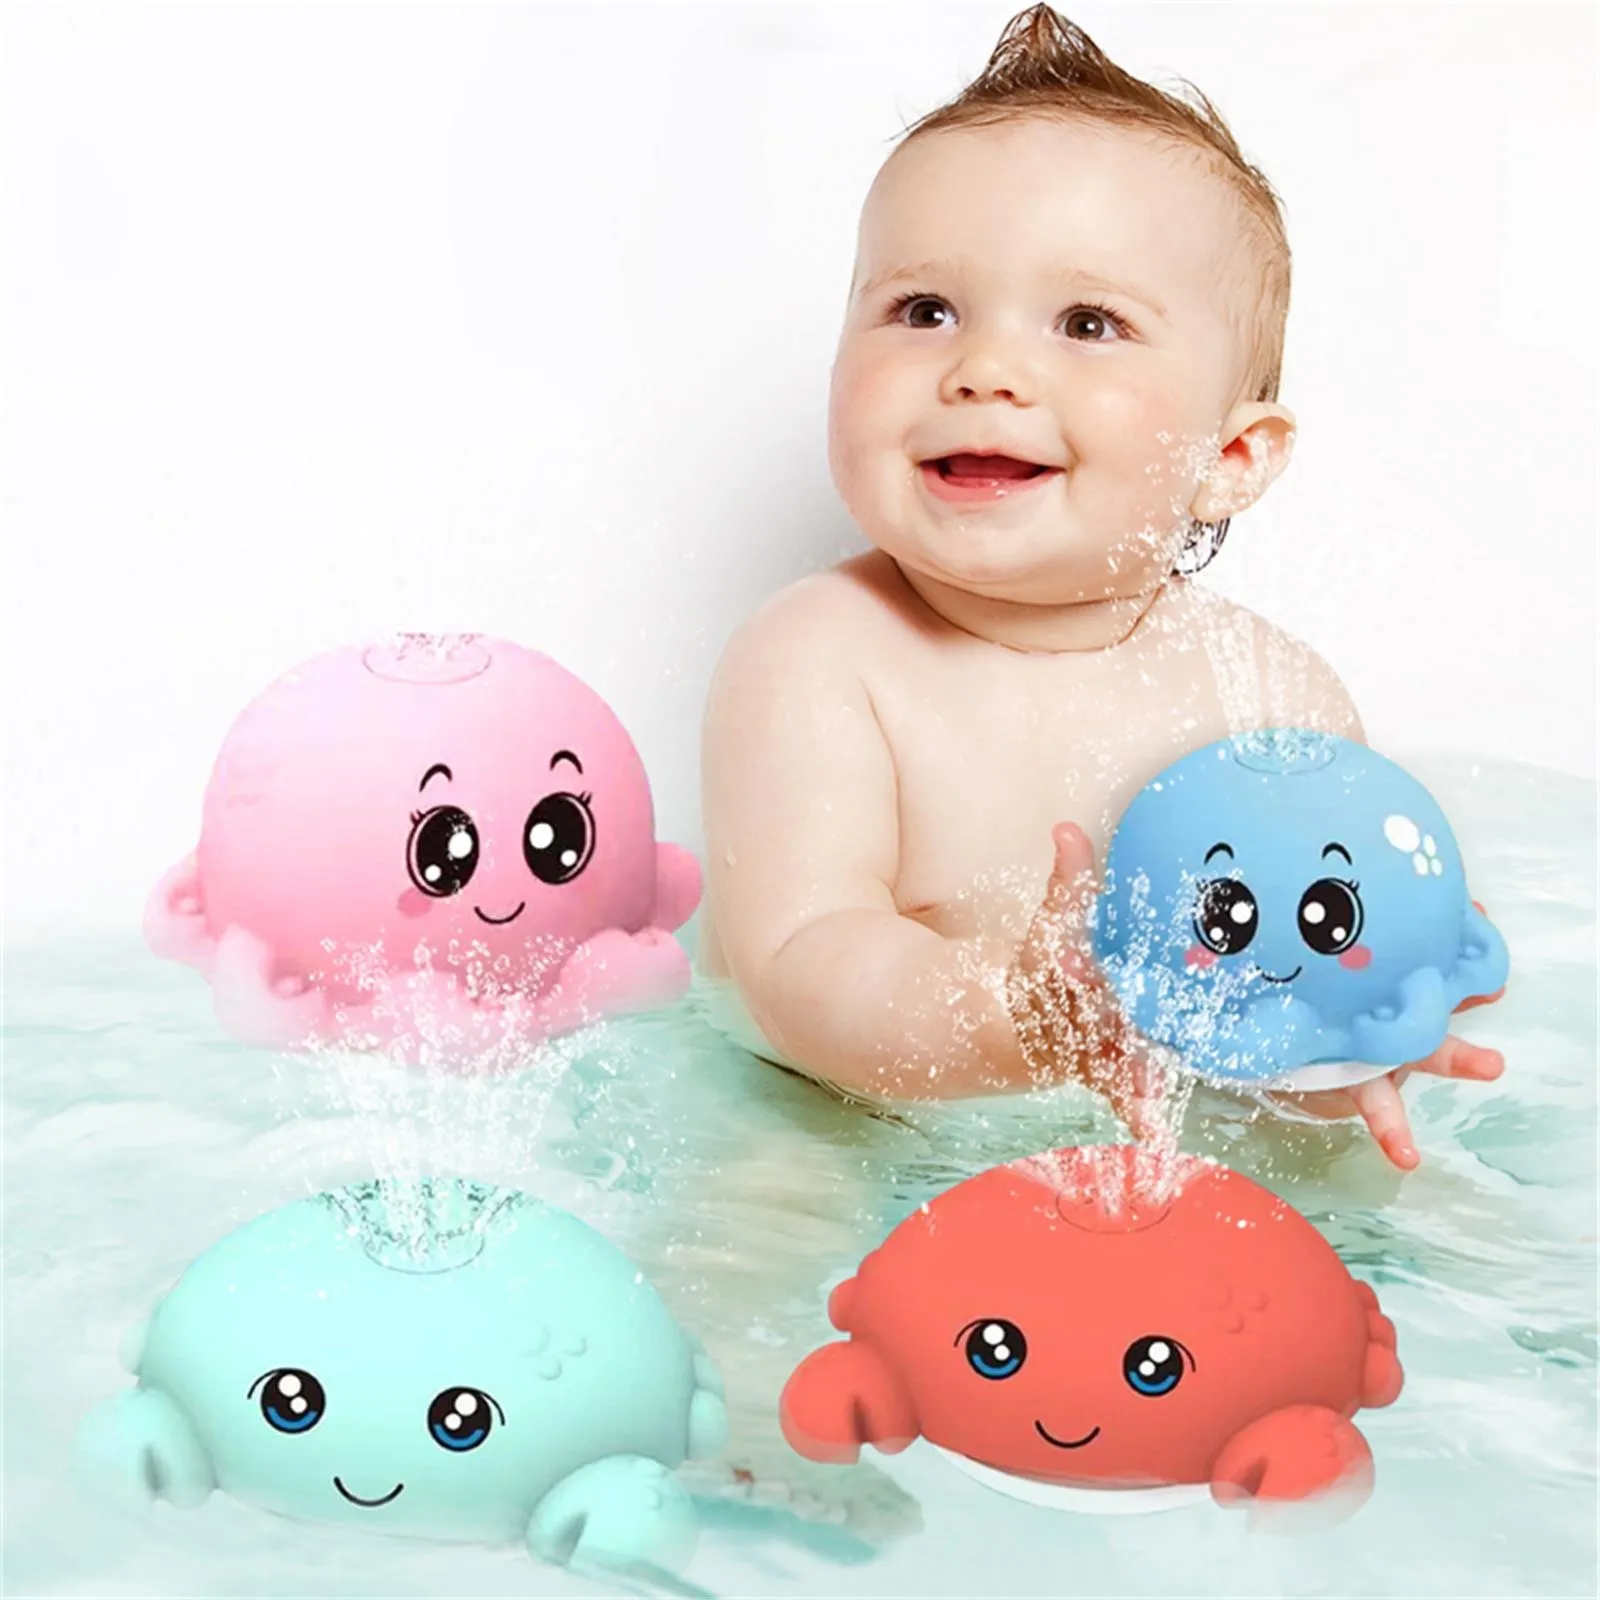 Vital Baby BATH TOY FLOAT & SLIDE Baby Bath Toy BN 